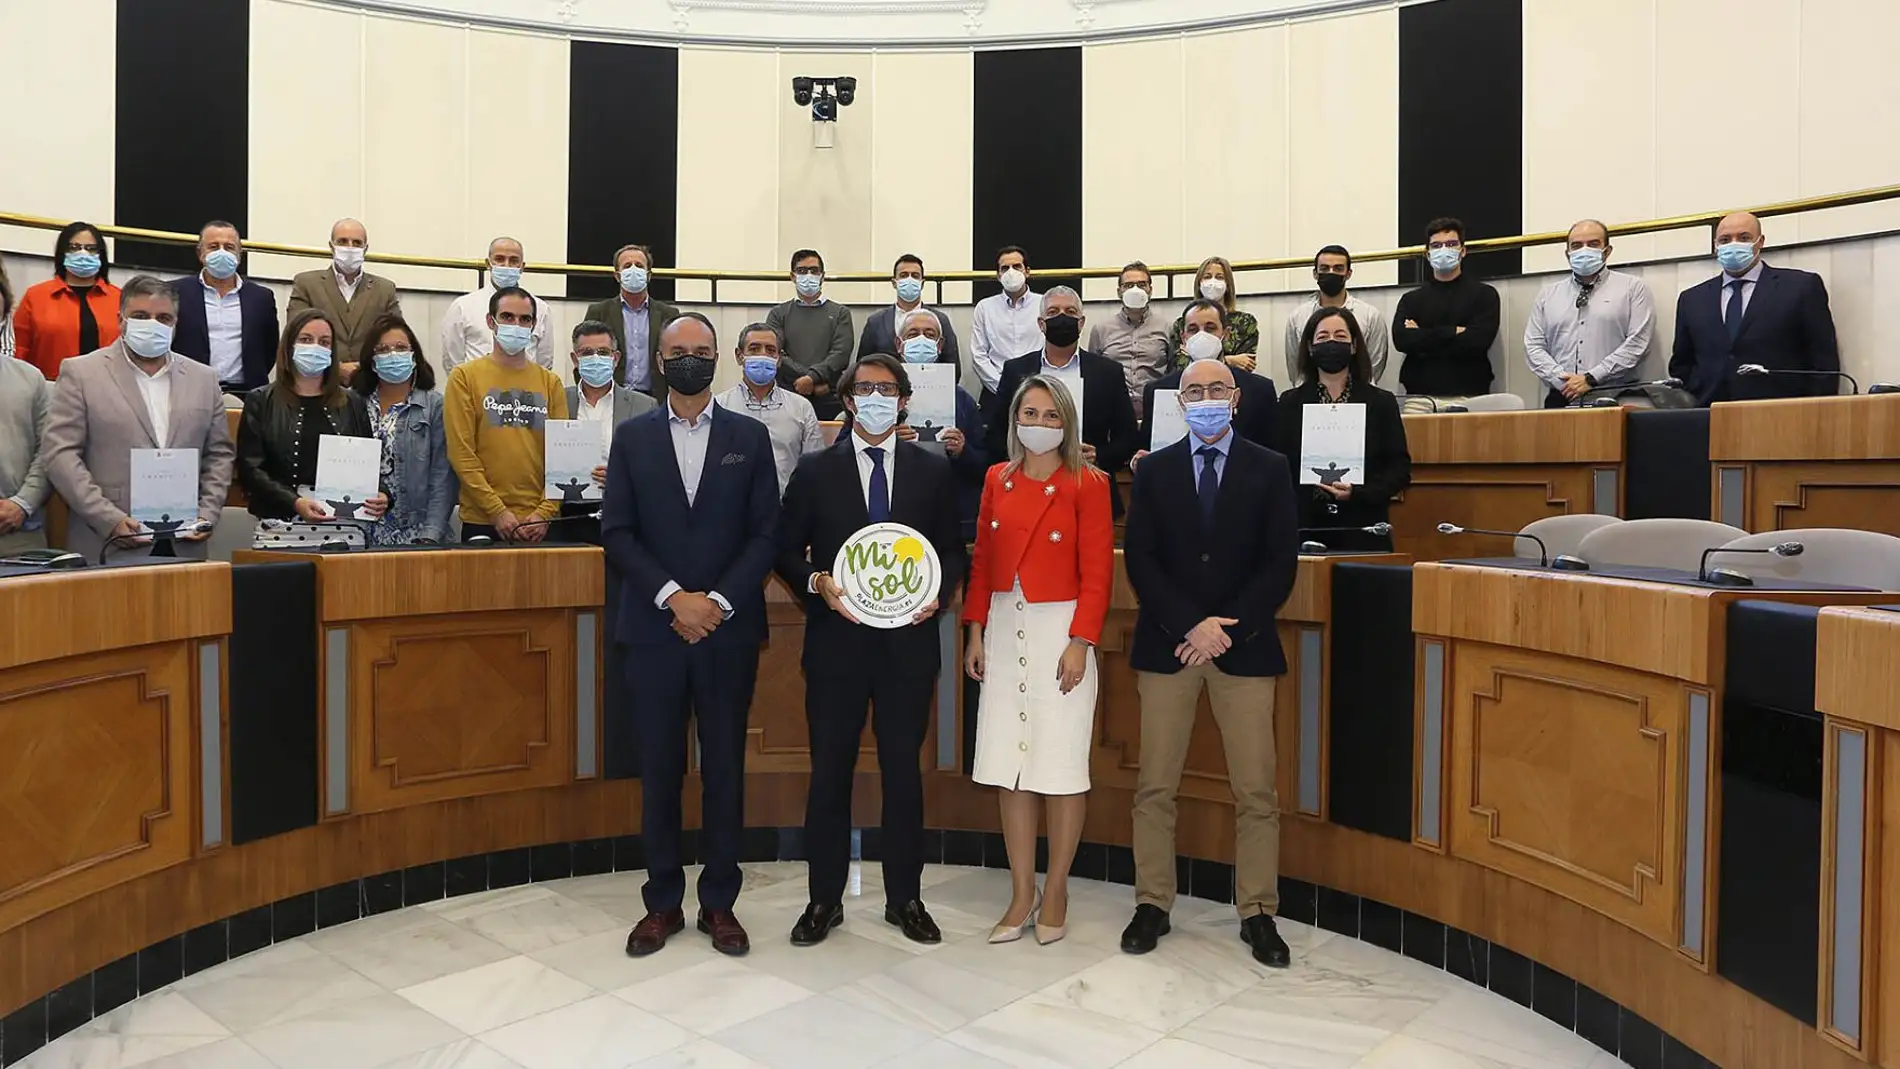 La Diputación de Alicante entrega la guía Smart city a siete ayuntamientos para impulsar su transformación digital 